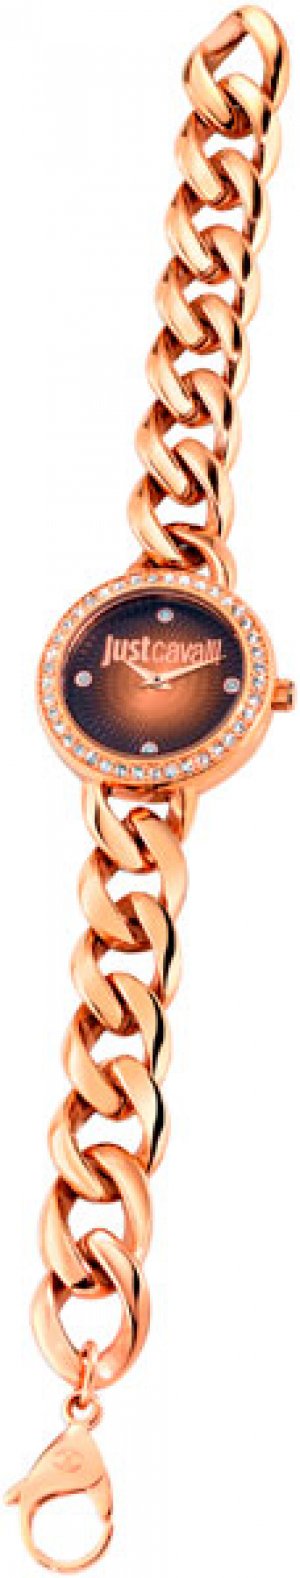 Женские часы R7253212501 Just Cavalli